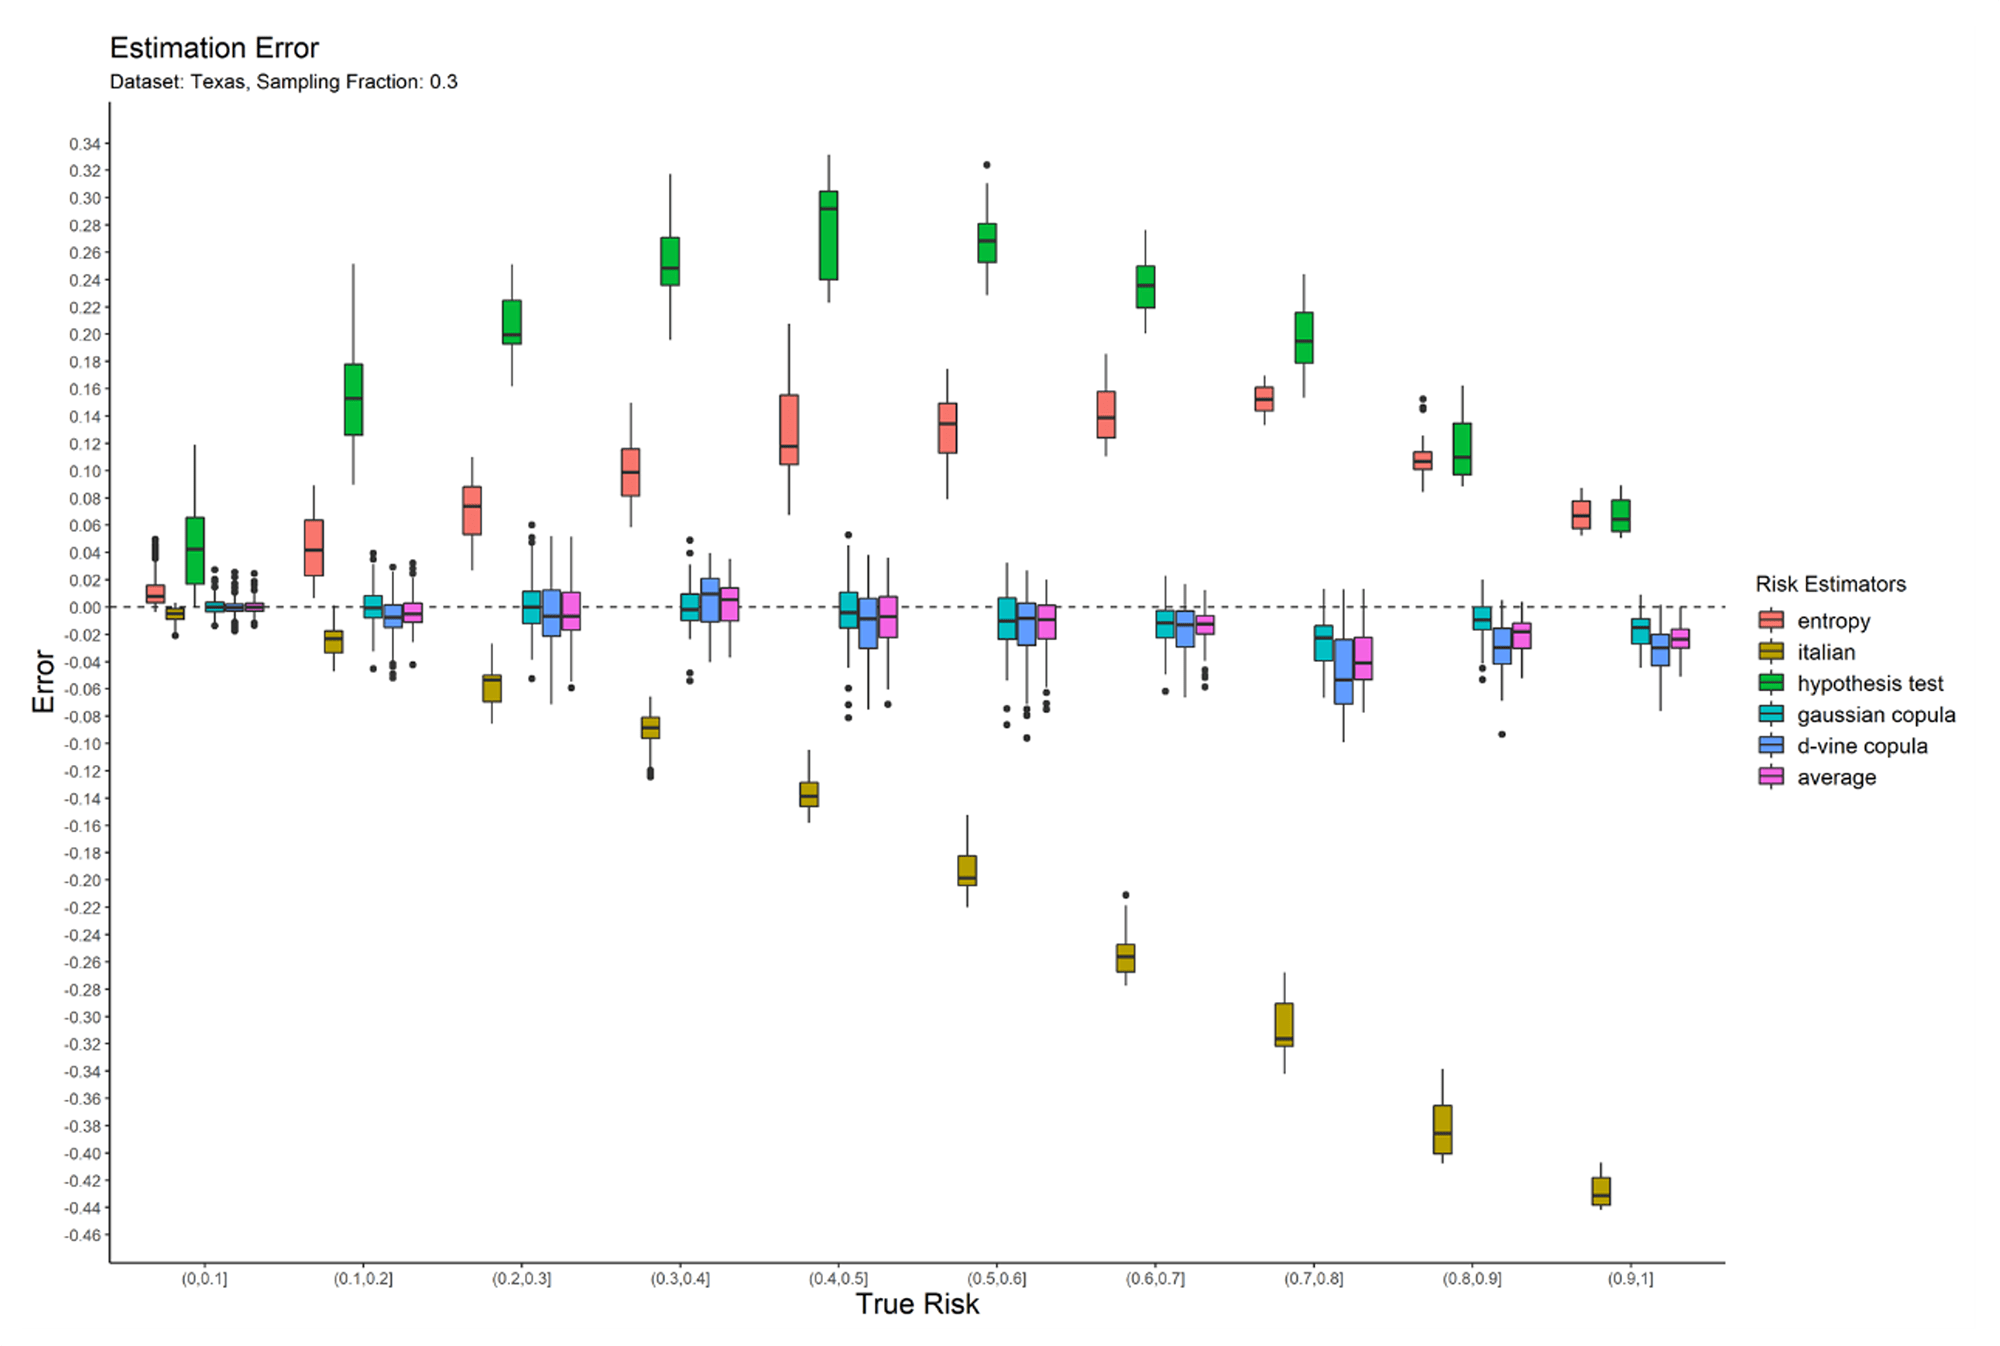 figure1 Sampling fraction of 0.3 for Texas dataset